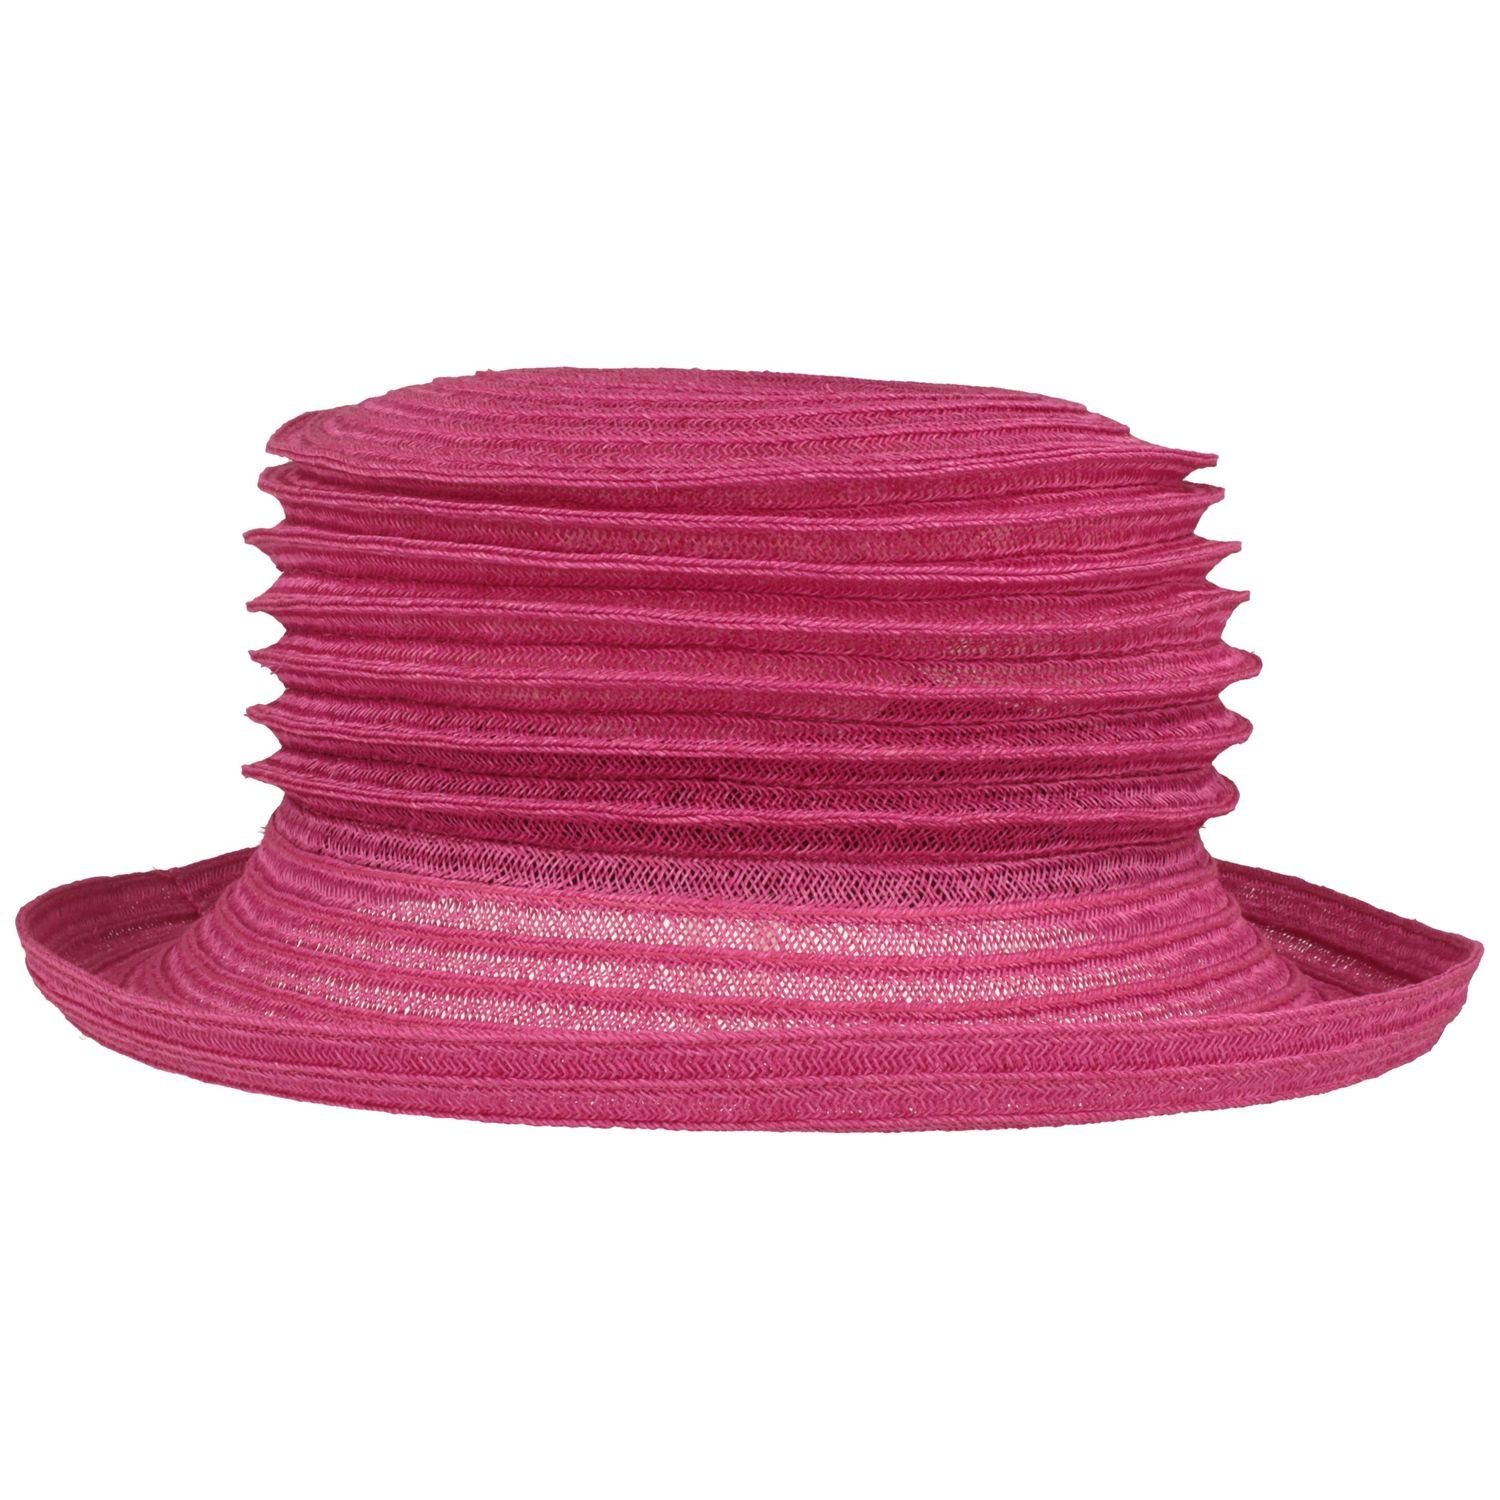 Mayser Strohhut knautschbarer & faltbarer 9010 Bella Hanf Bortenhut pink aus